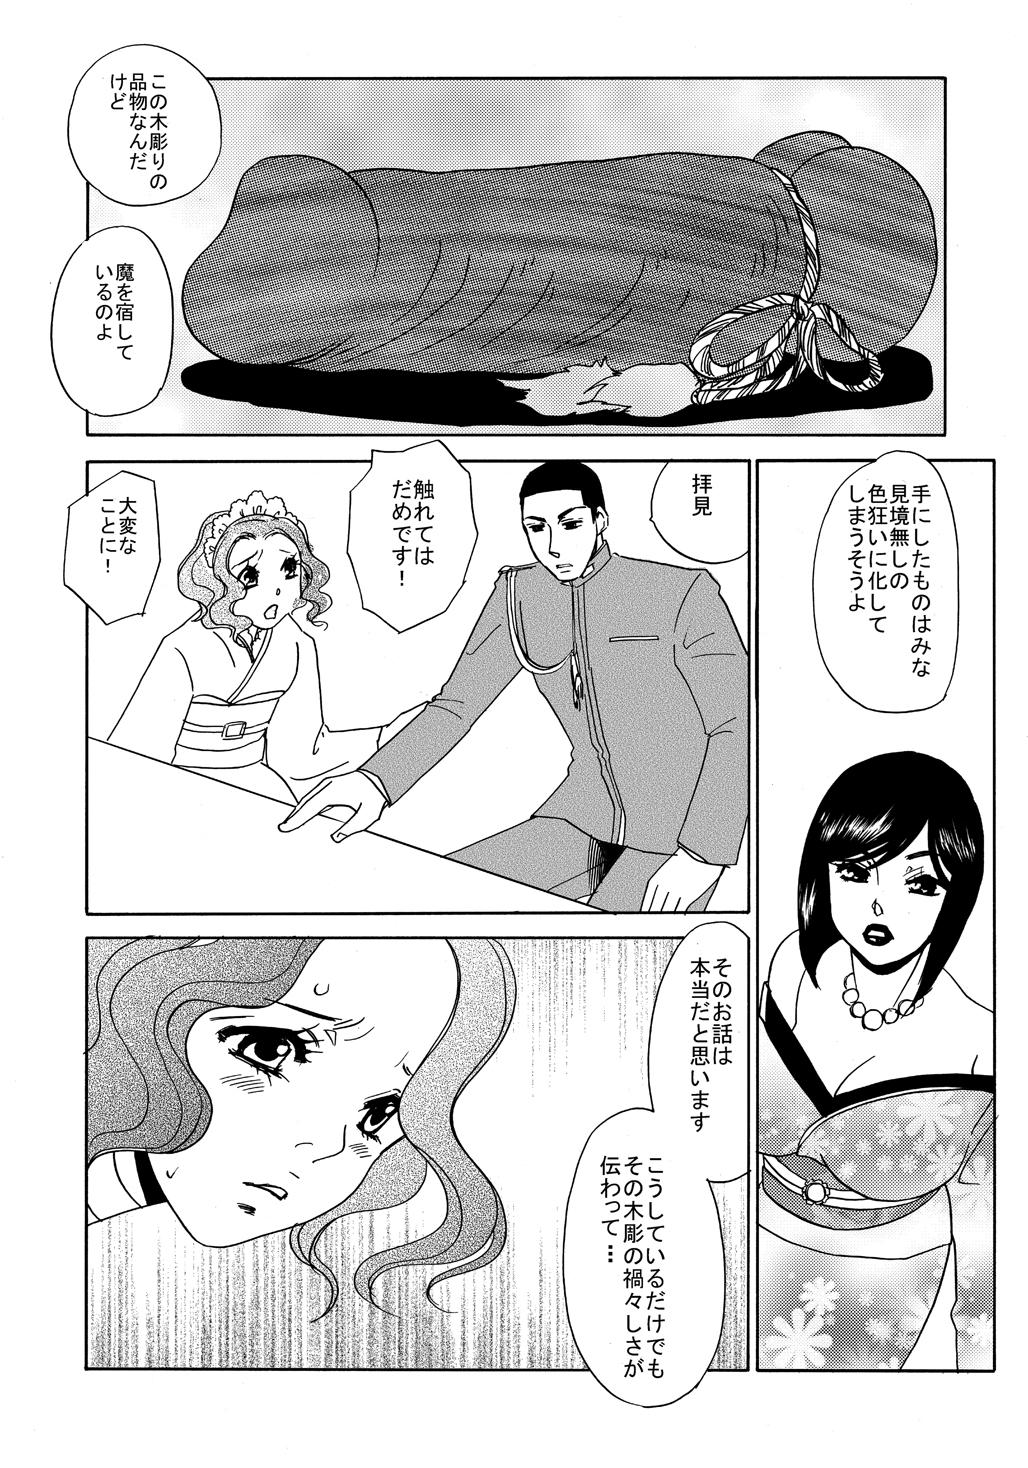 Horny Slut Koi Nurunuru To - Otome youkai zakuro Cut - Page 3